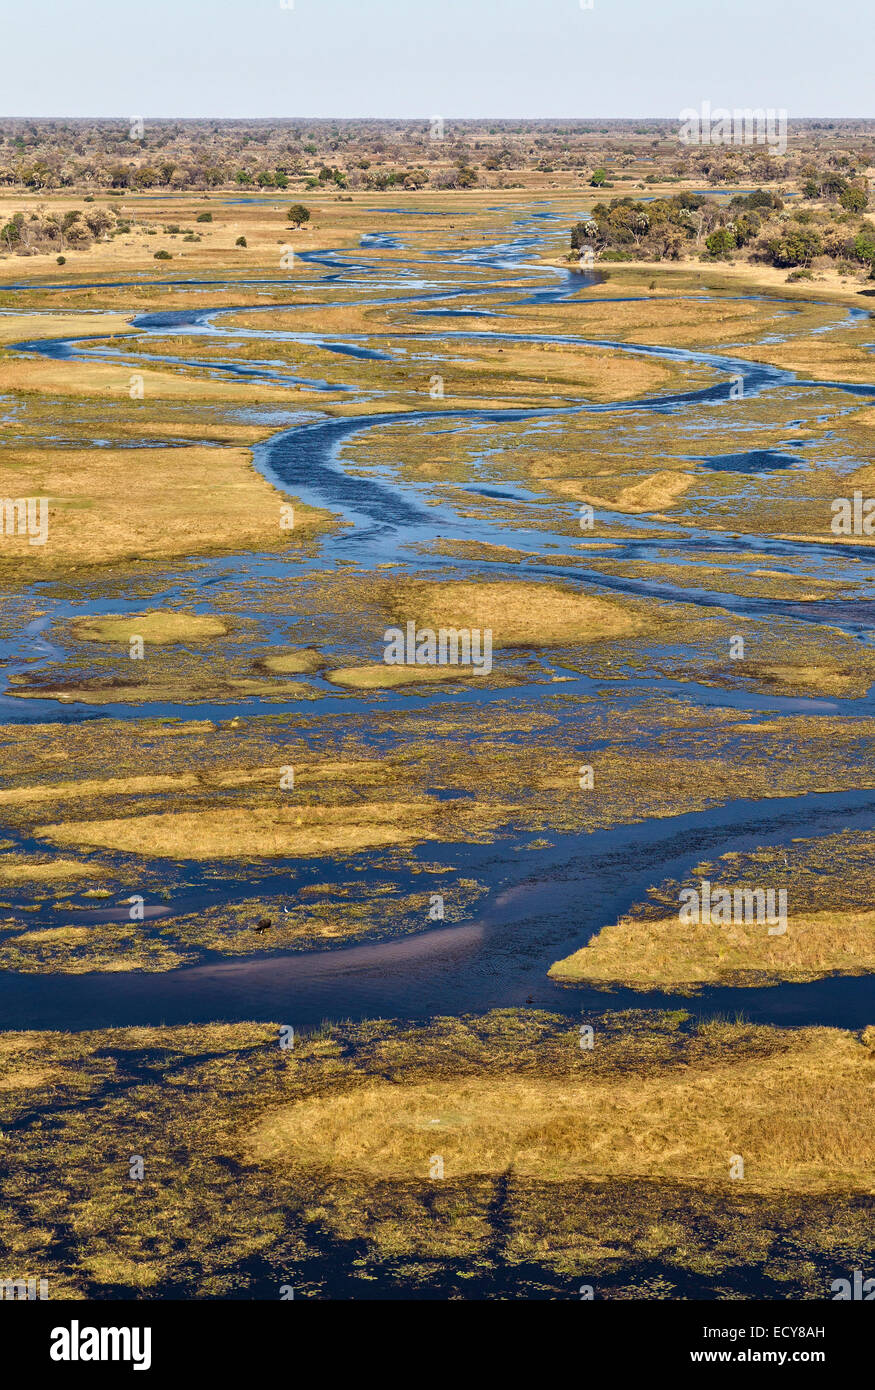 Il fiume Gomoti con i suoi canali e delle isole adiacenti paludi di acqua dolce, vista aerea, Okavango Delta, Botswana Foto Stock